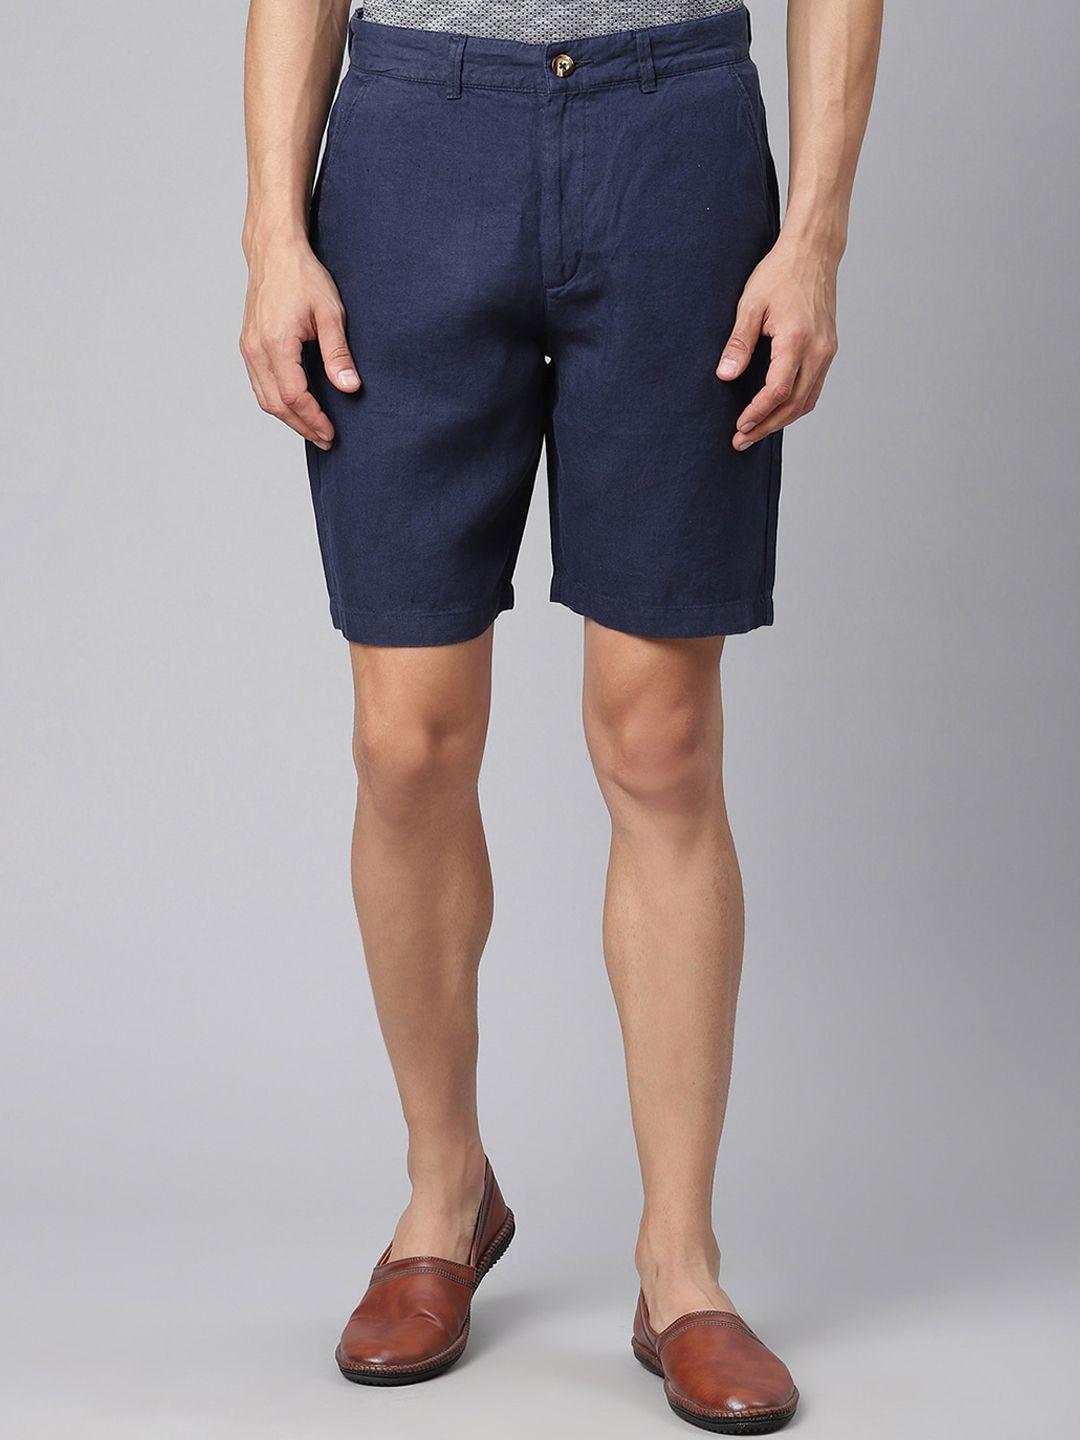 harsam men navy blue linen regular shorts